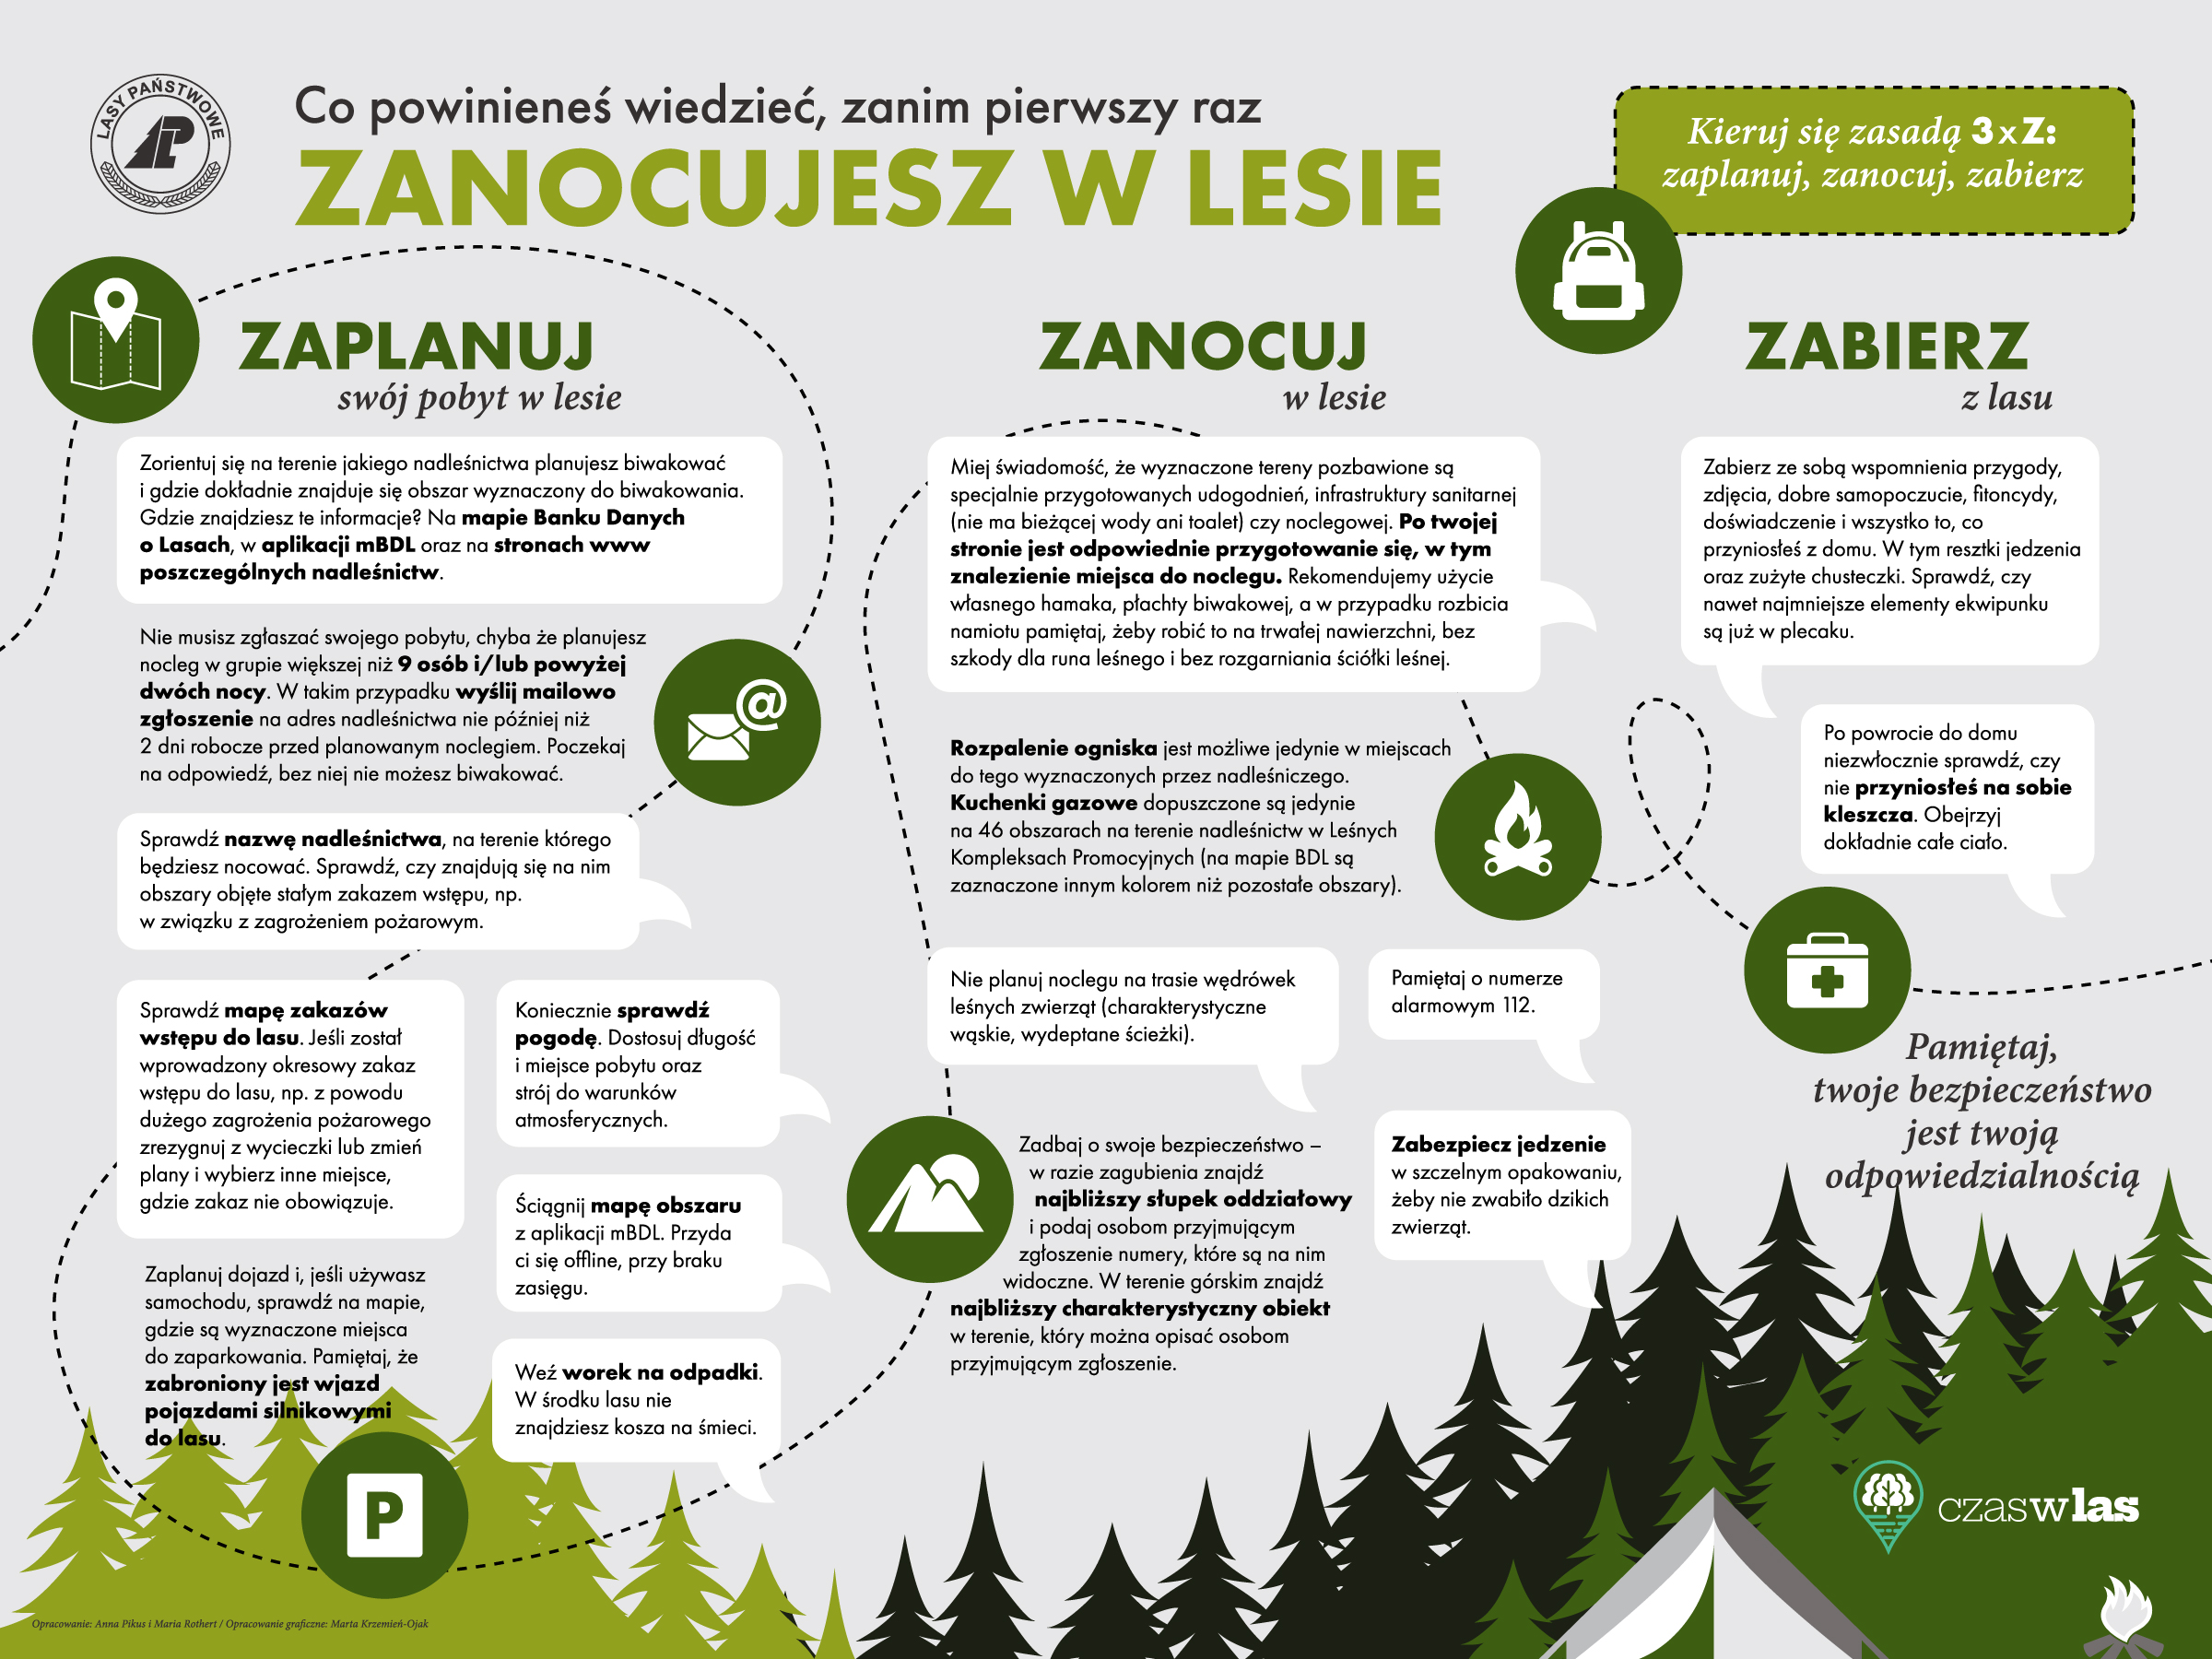 Infografika przedstawia szczegóły programu "Zanocuj w lesie". Źródło: CILP.